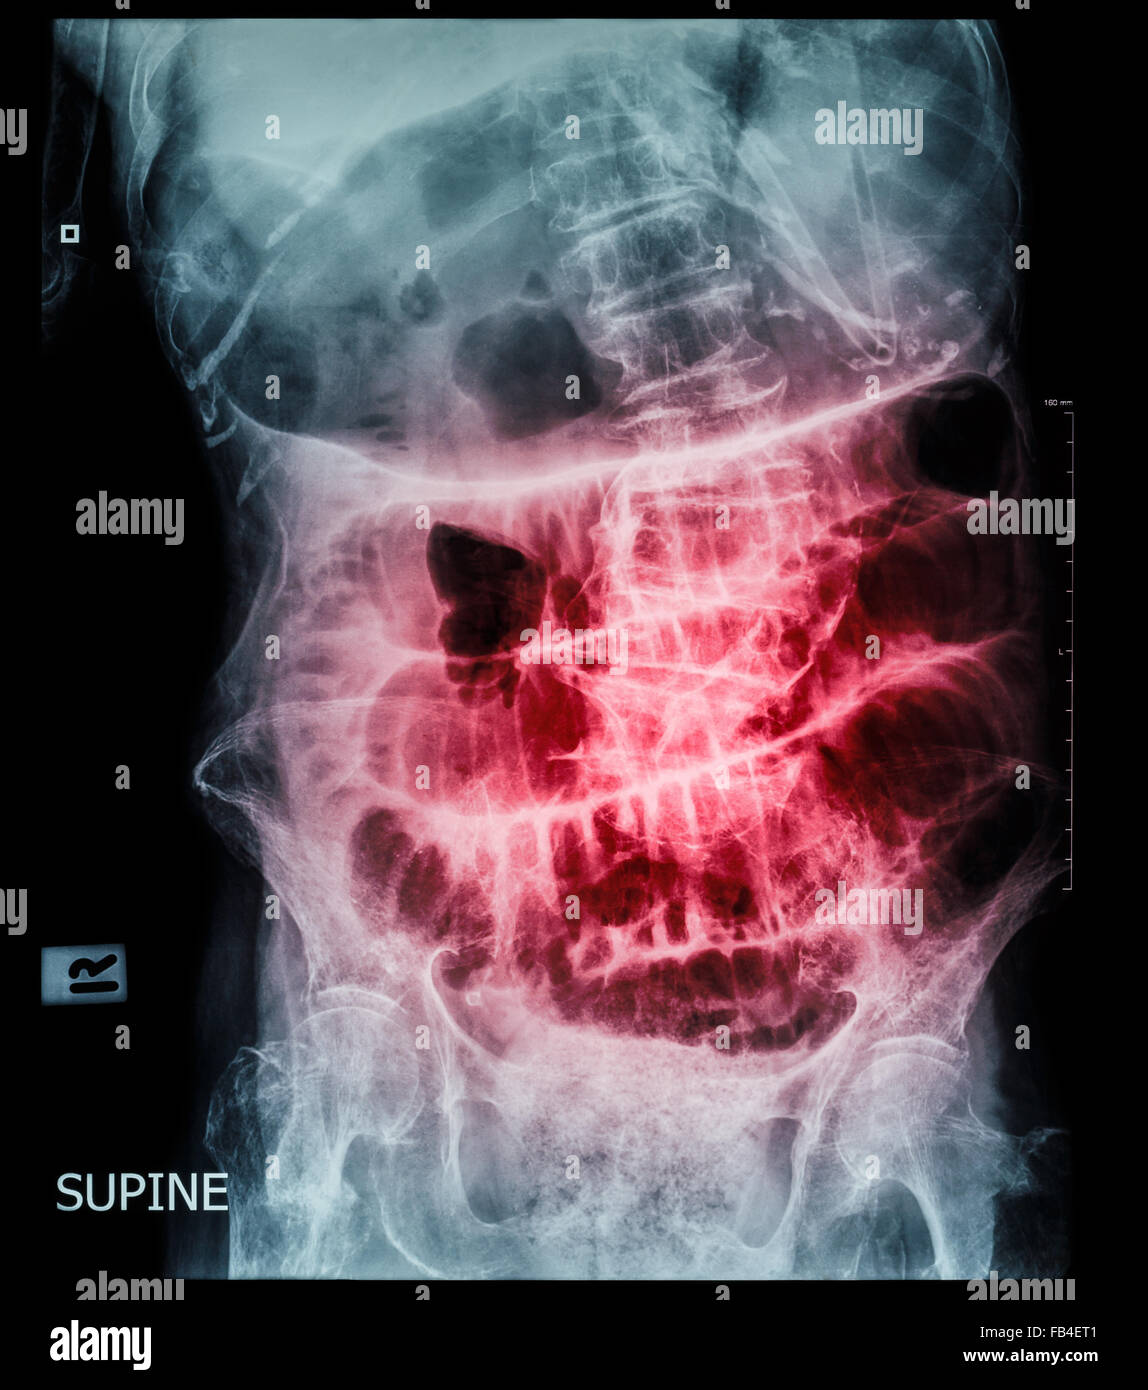 Kleinen Darmverschluss (Film Röntgen-Abdomen (Rückenlage): Show Dünndarm und Magen dehnen) (Leiter Schrittmuster) Stockfoto